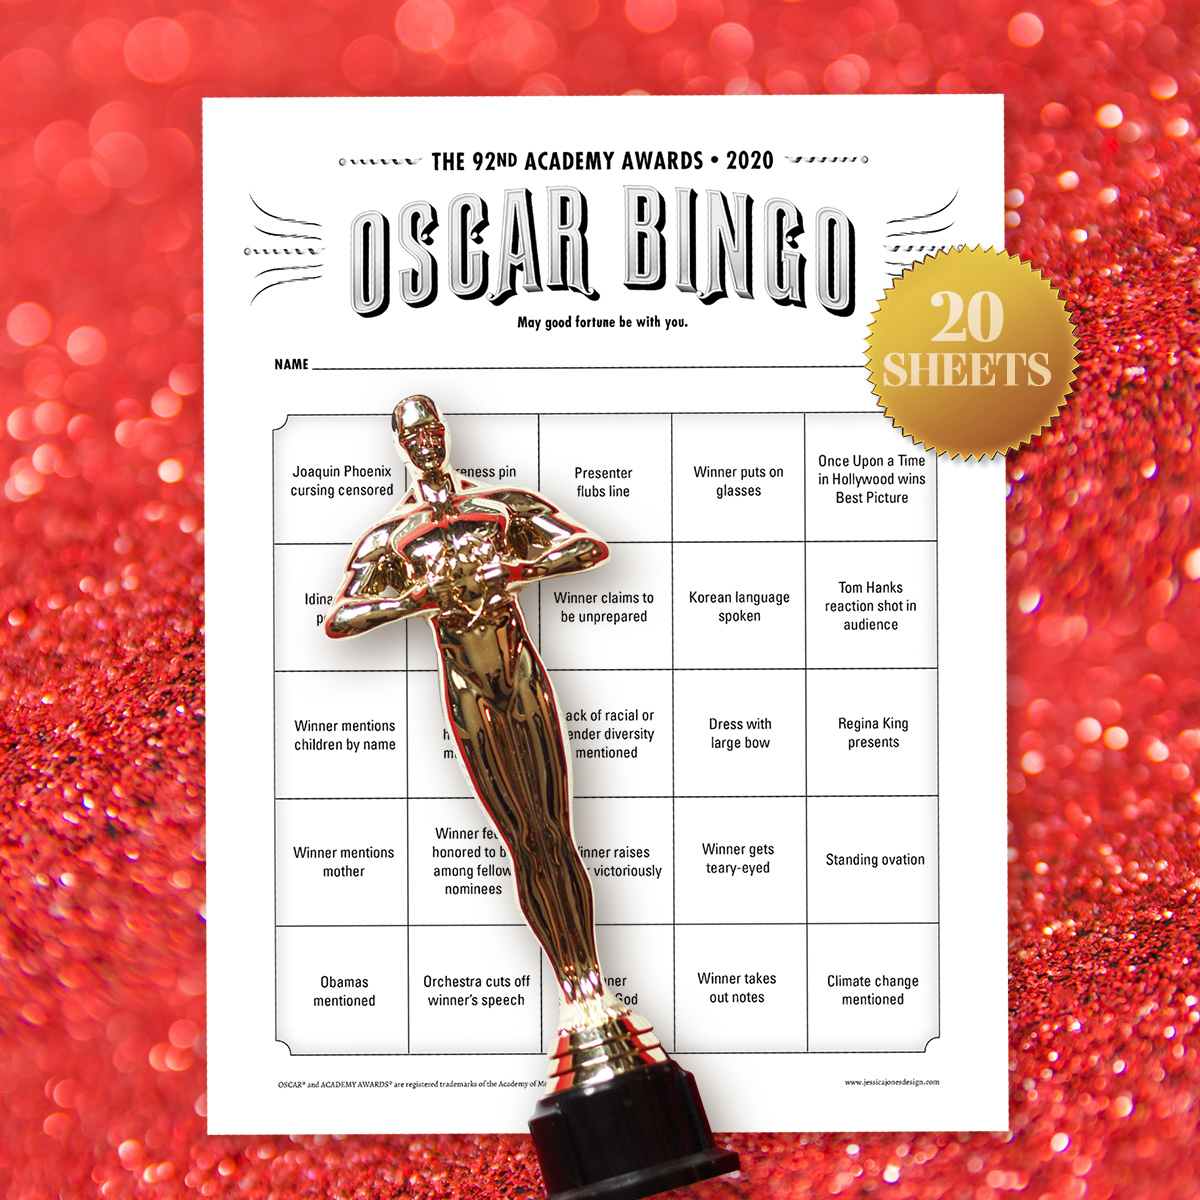 oscar-bingo-2020-party-game-bingo-makes-the-academy-awards-fun